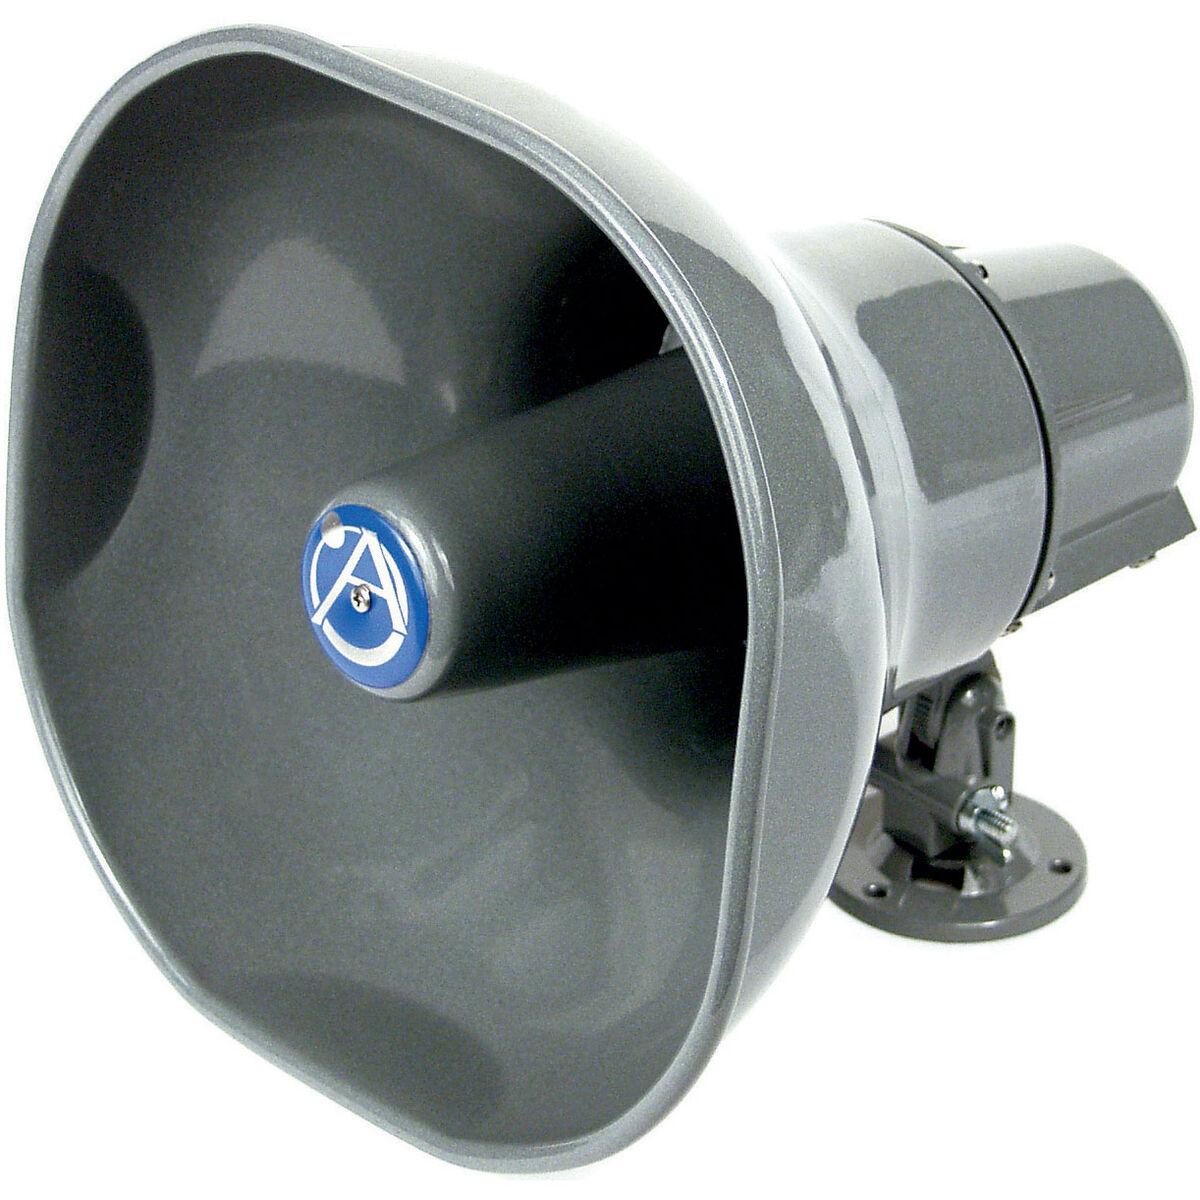 Atlas Sound Ap-15 8 Ohm Metal 15 Watt Horn Loudspeaker for sale online 